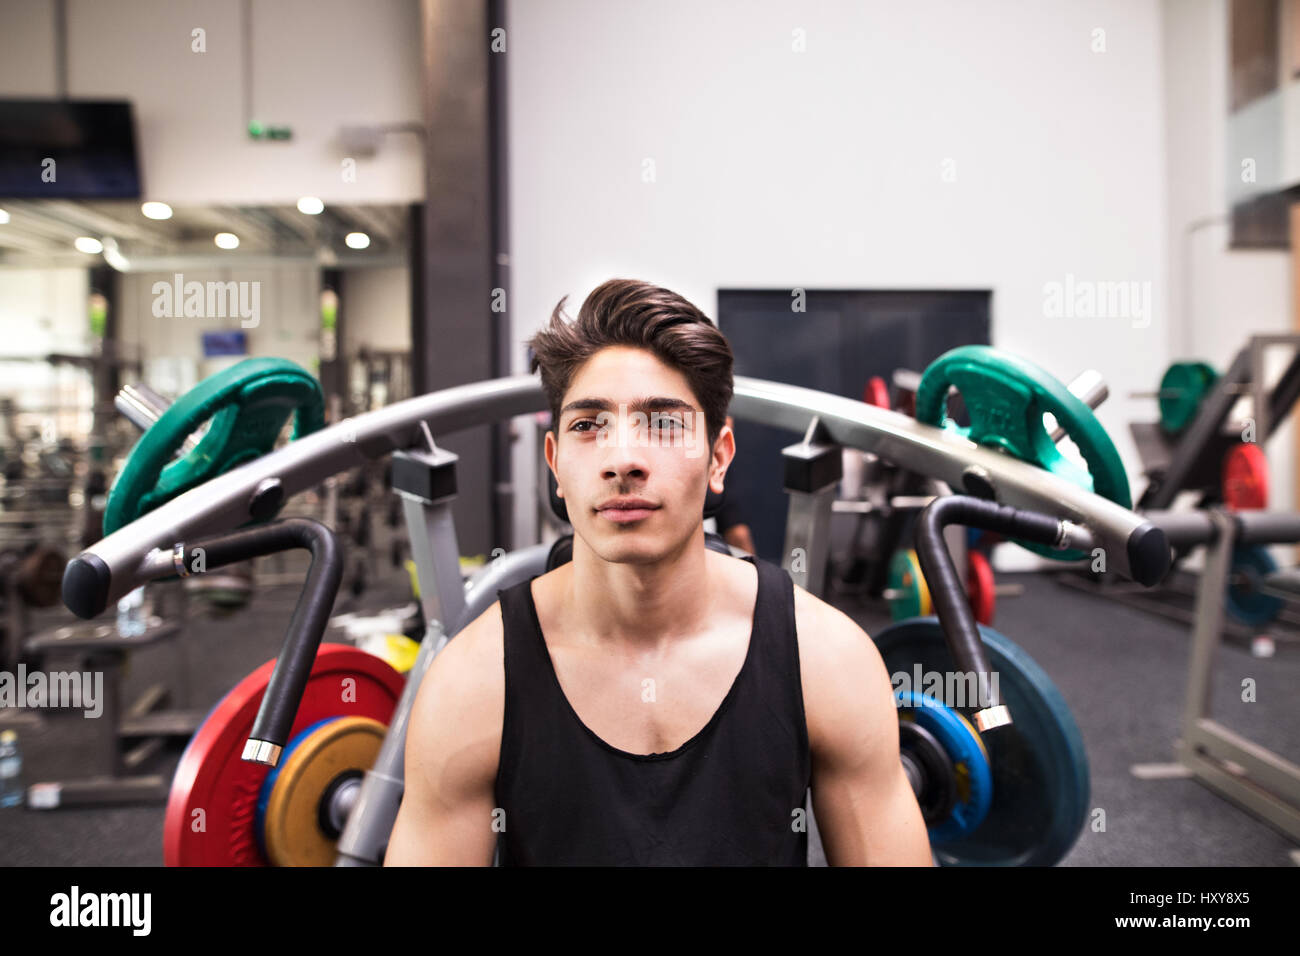 Junge fit hispanic Mann im Fitness-Studio gehen, um am Fitnessgerät trainieren, Muskeln. Bodybuilder Training vorbereitet Presse Schulter wollen. Stockfoto